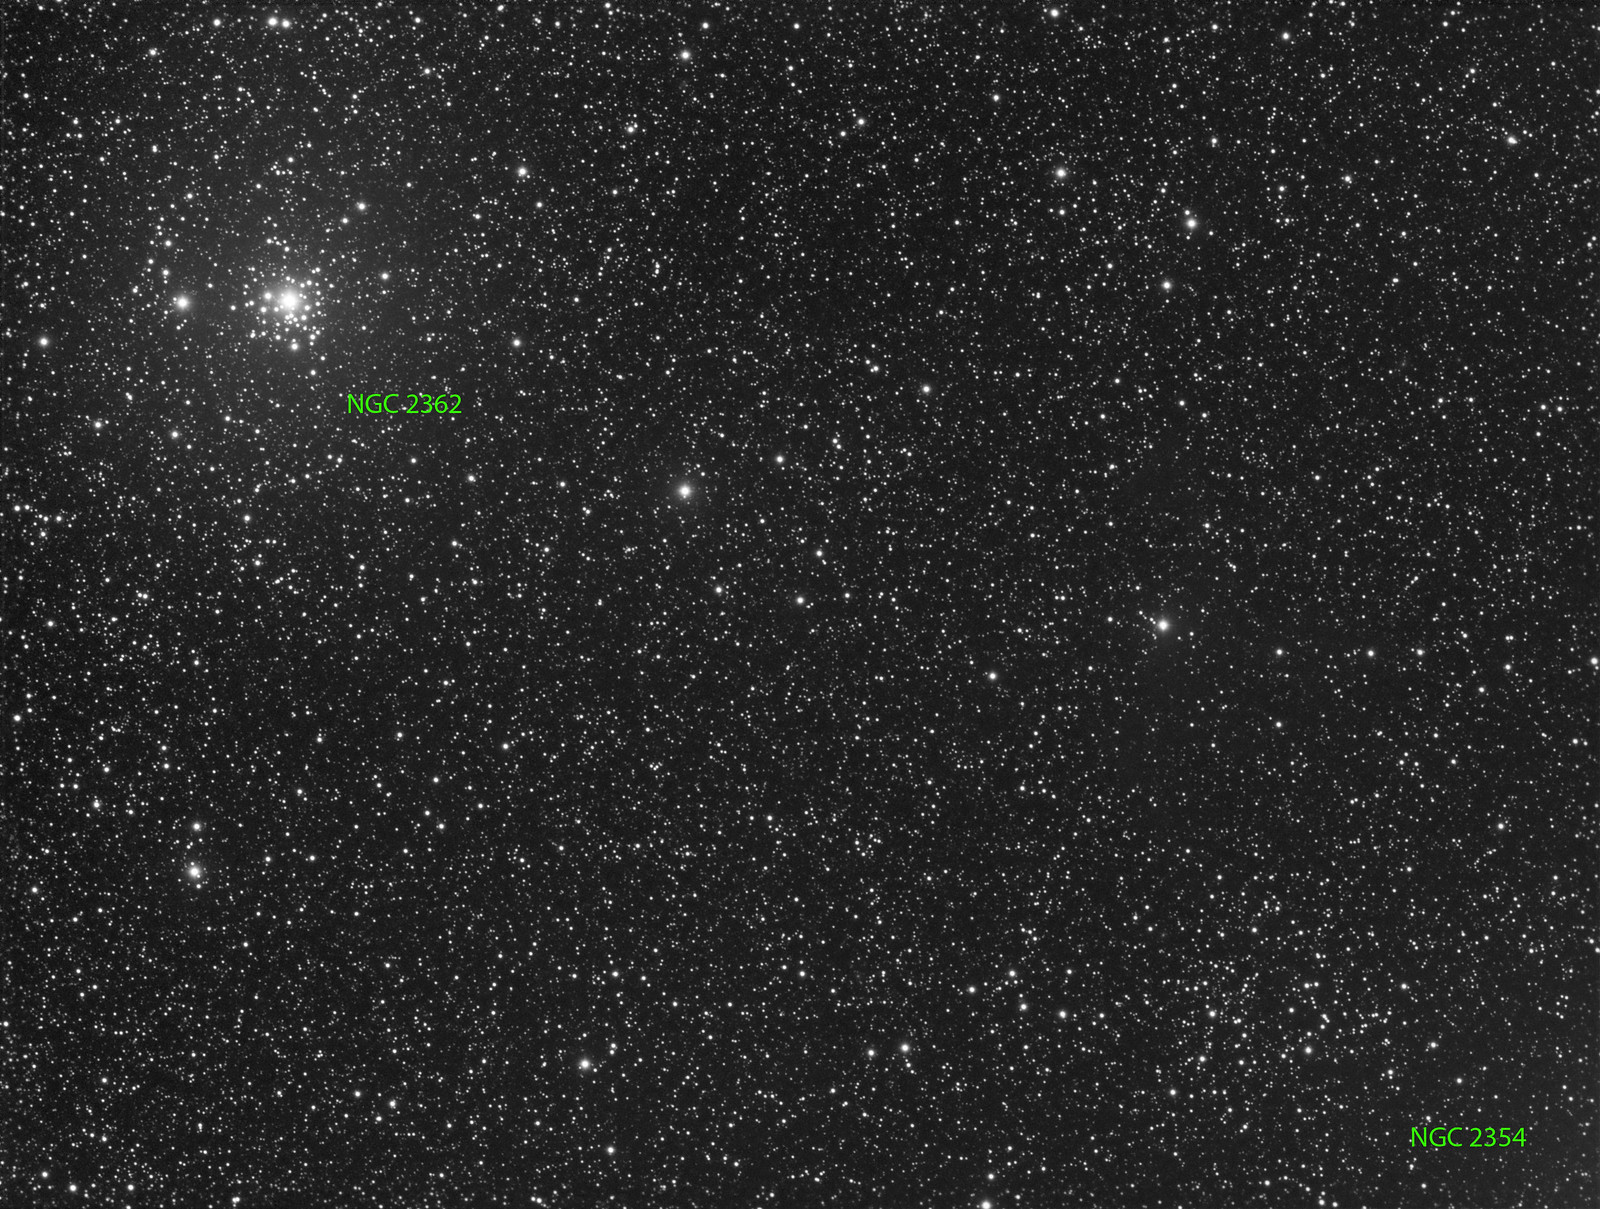 064 - NGC 2362 - Luminance